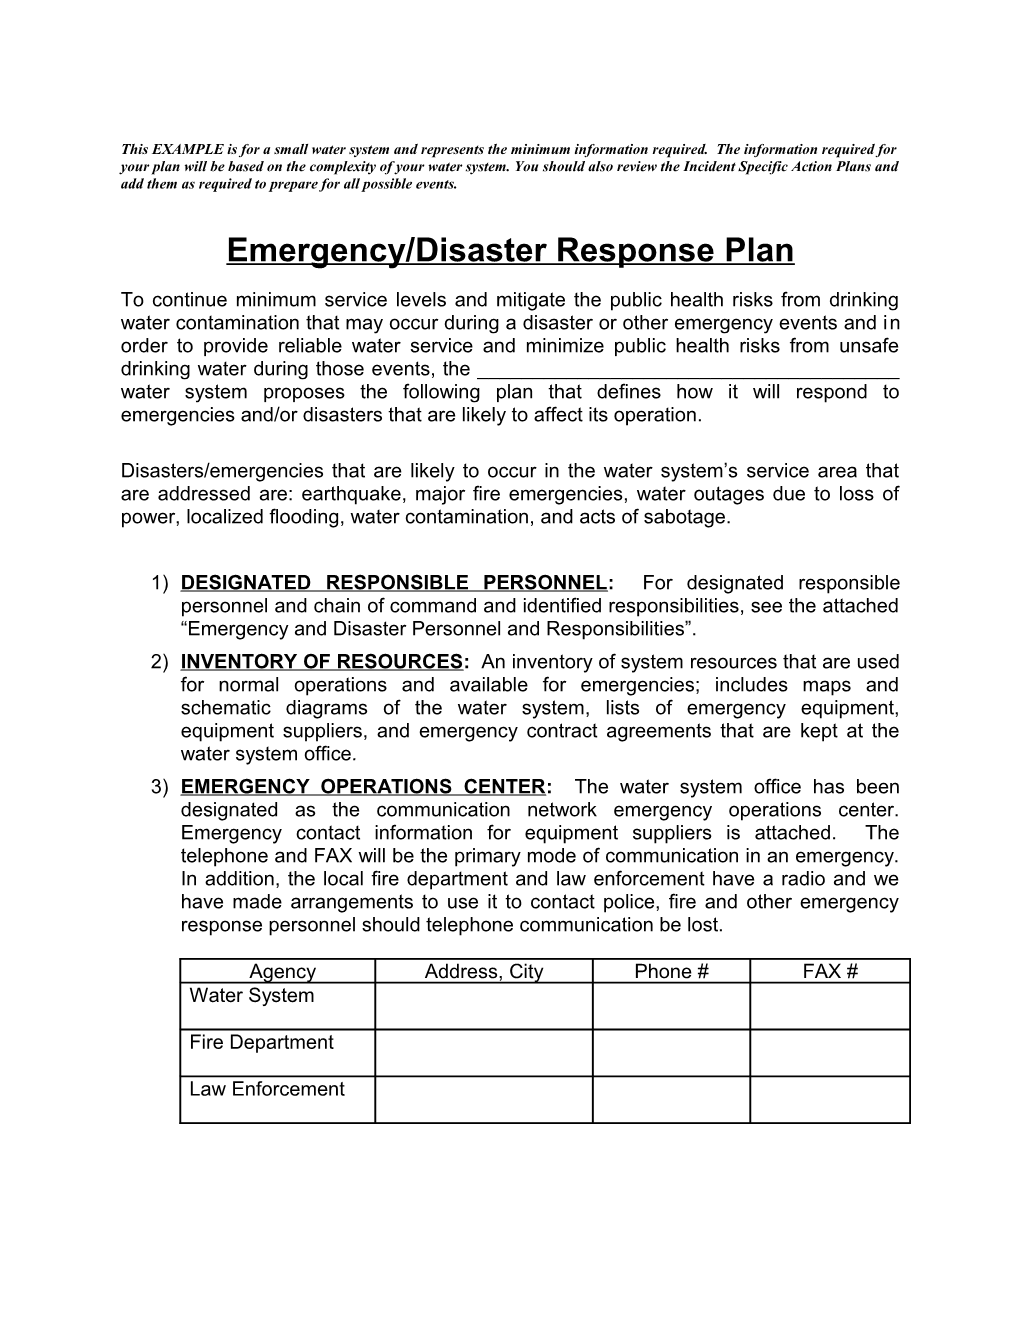 Emergency/Disaster Response Plan